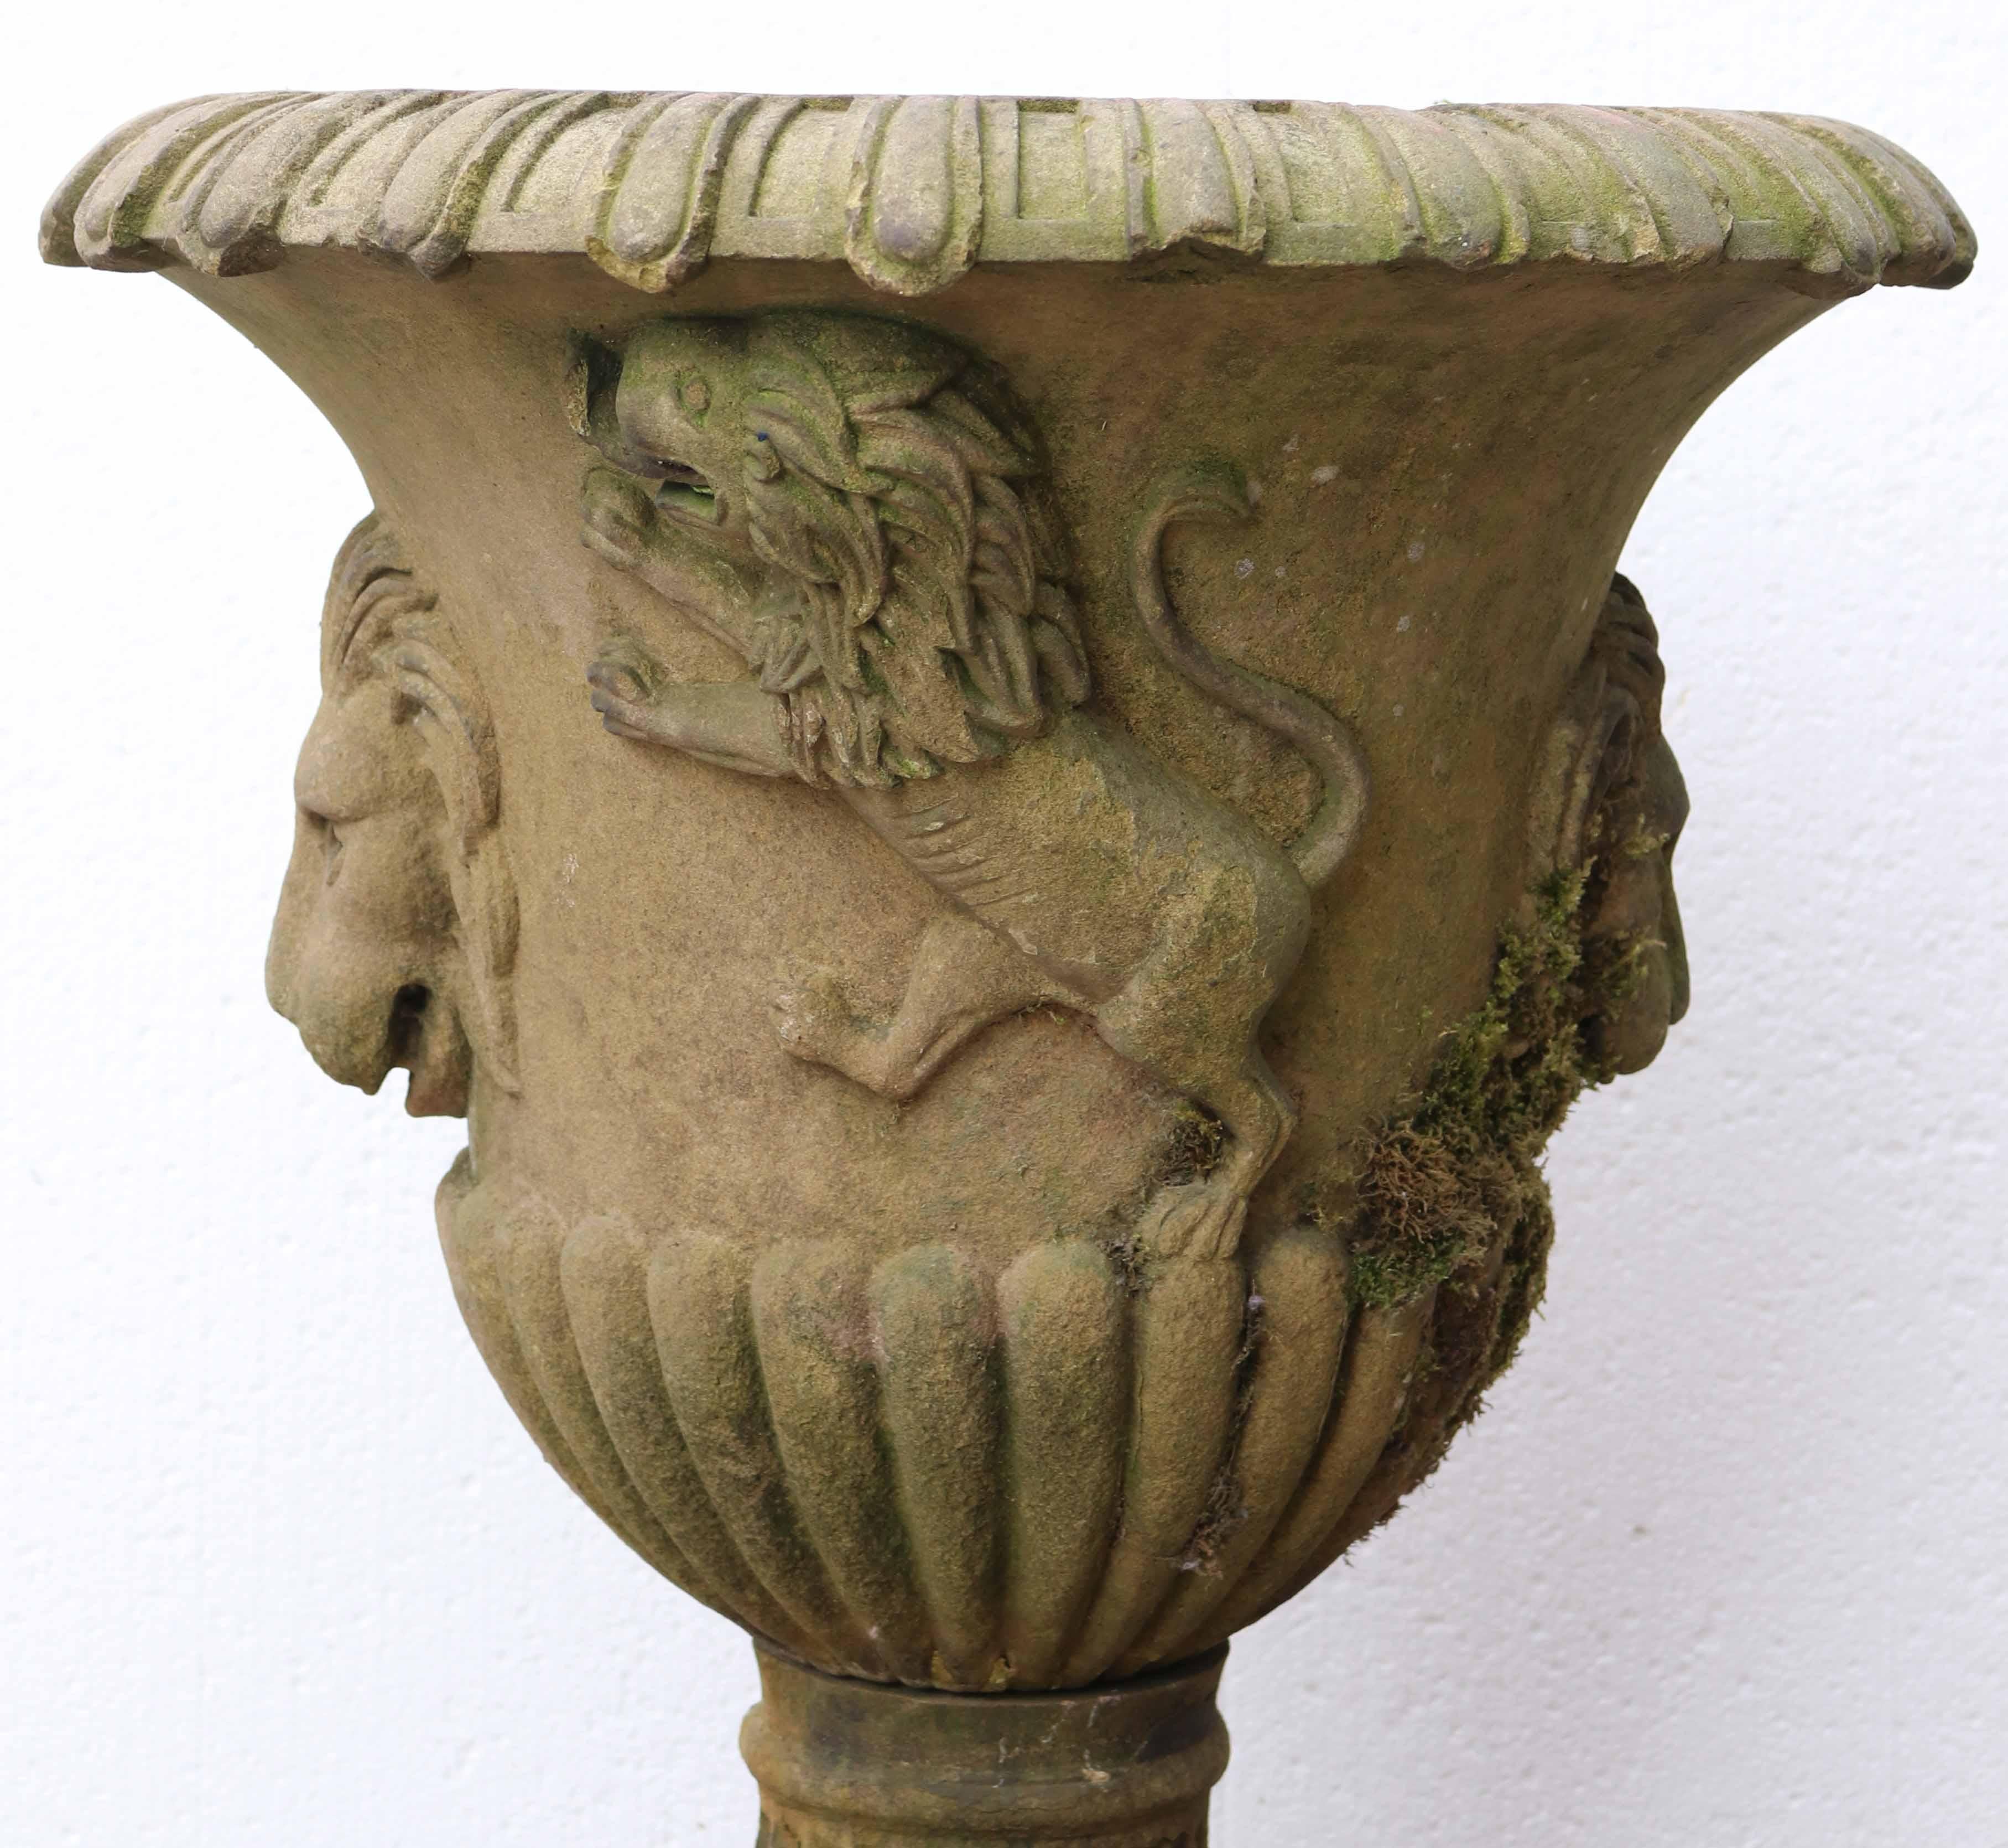 Ancienne urne anglaise en pierre de York sculptée du début du XIXe siècle, sculptée à la main de lions rampants, de masques de lion et de godrons sur une base à socle cannelé. Cette impressionnante urne de jardin de 200 ans date de l'époque